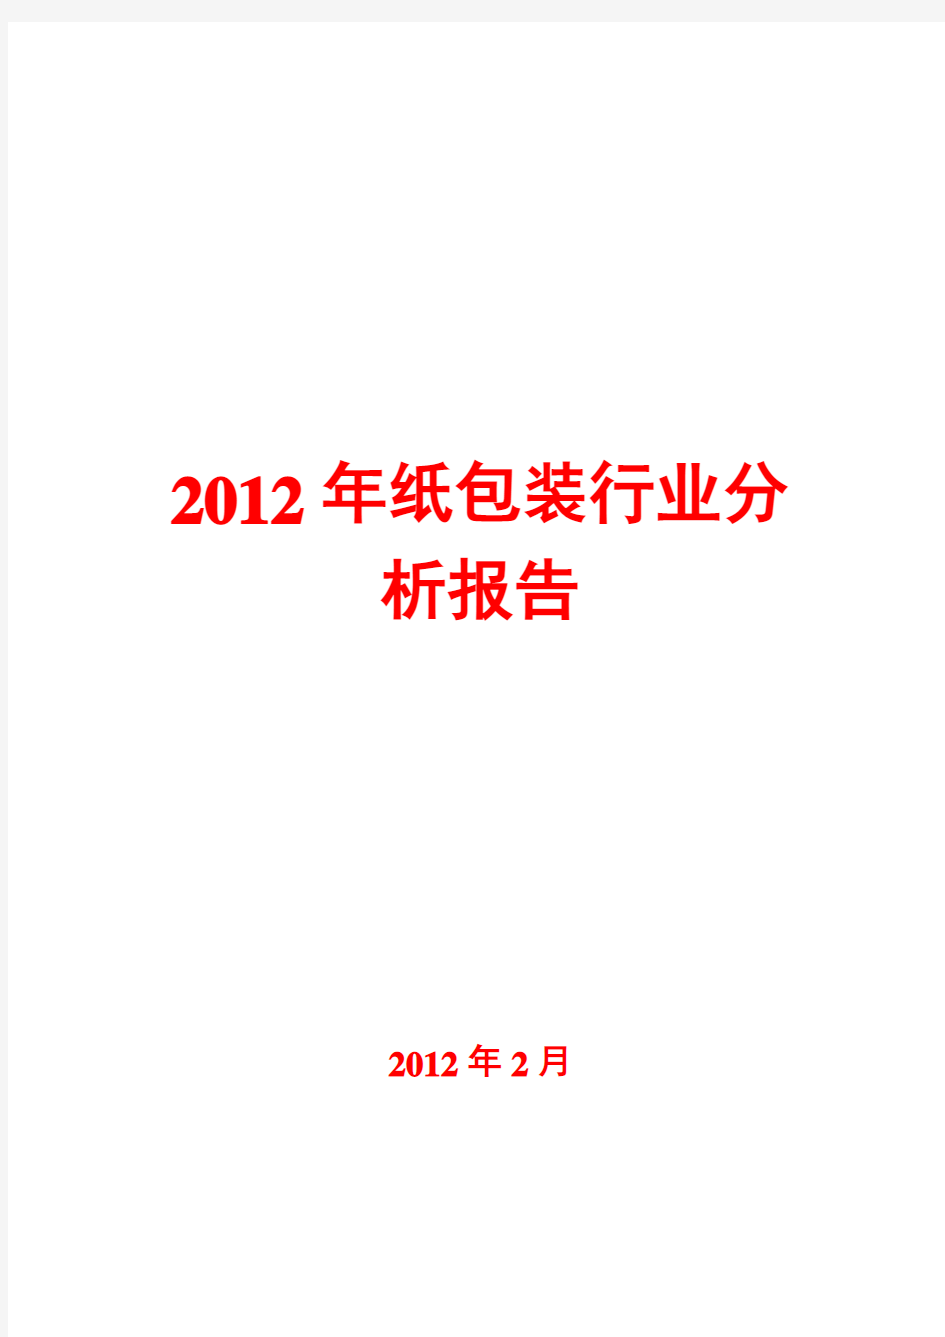 2012年纸包装行业分析报告